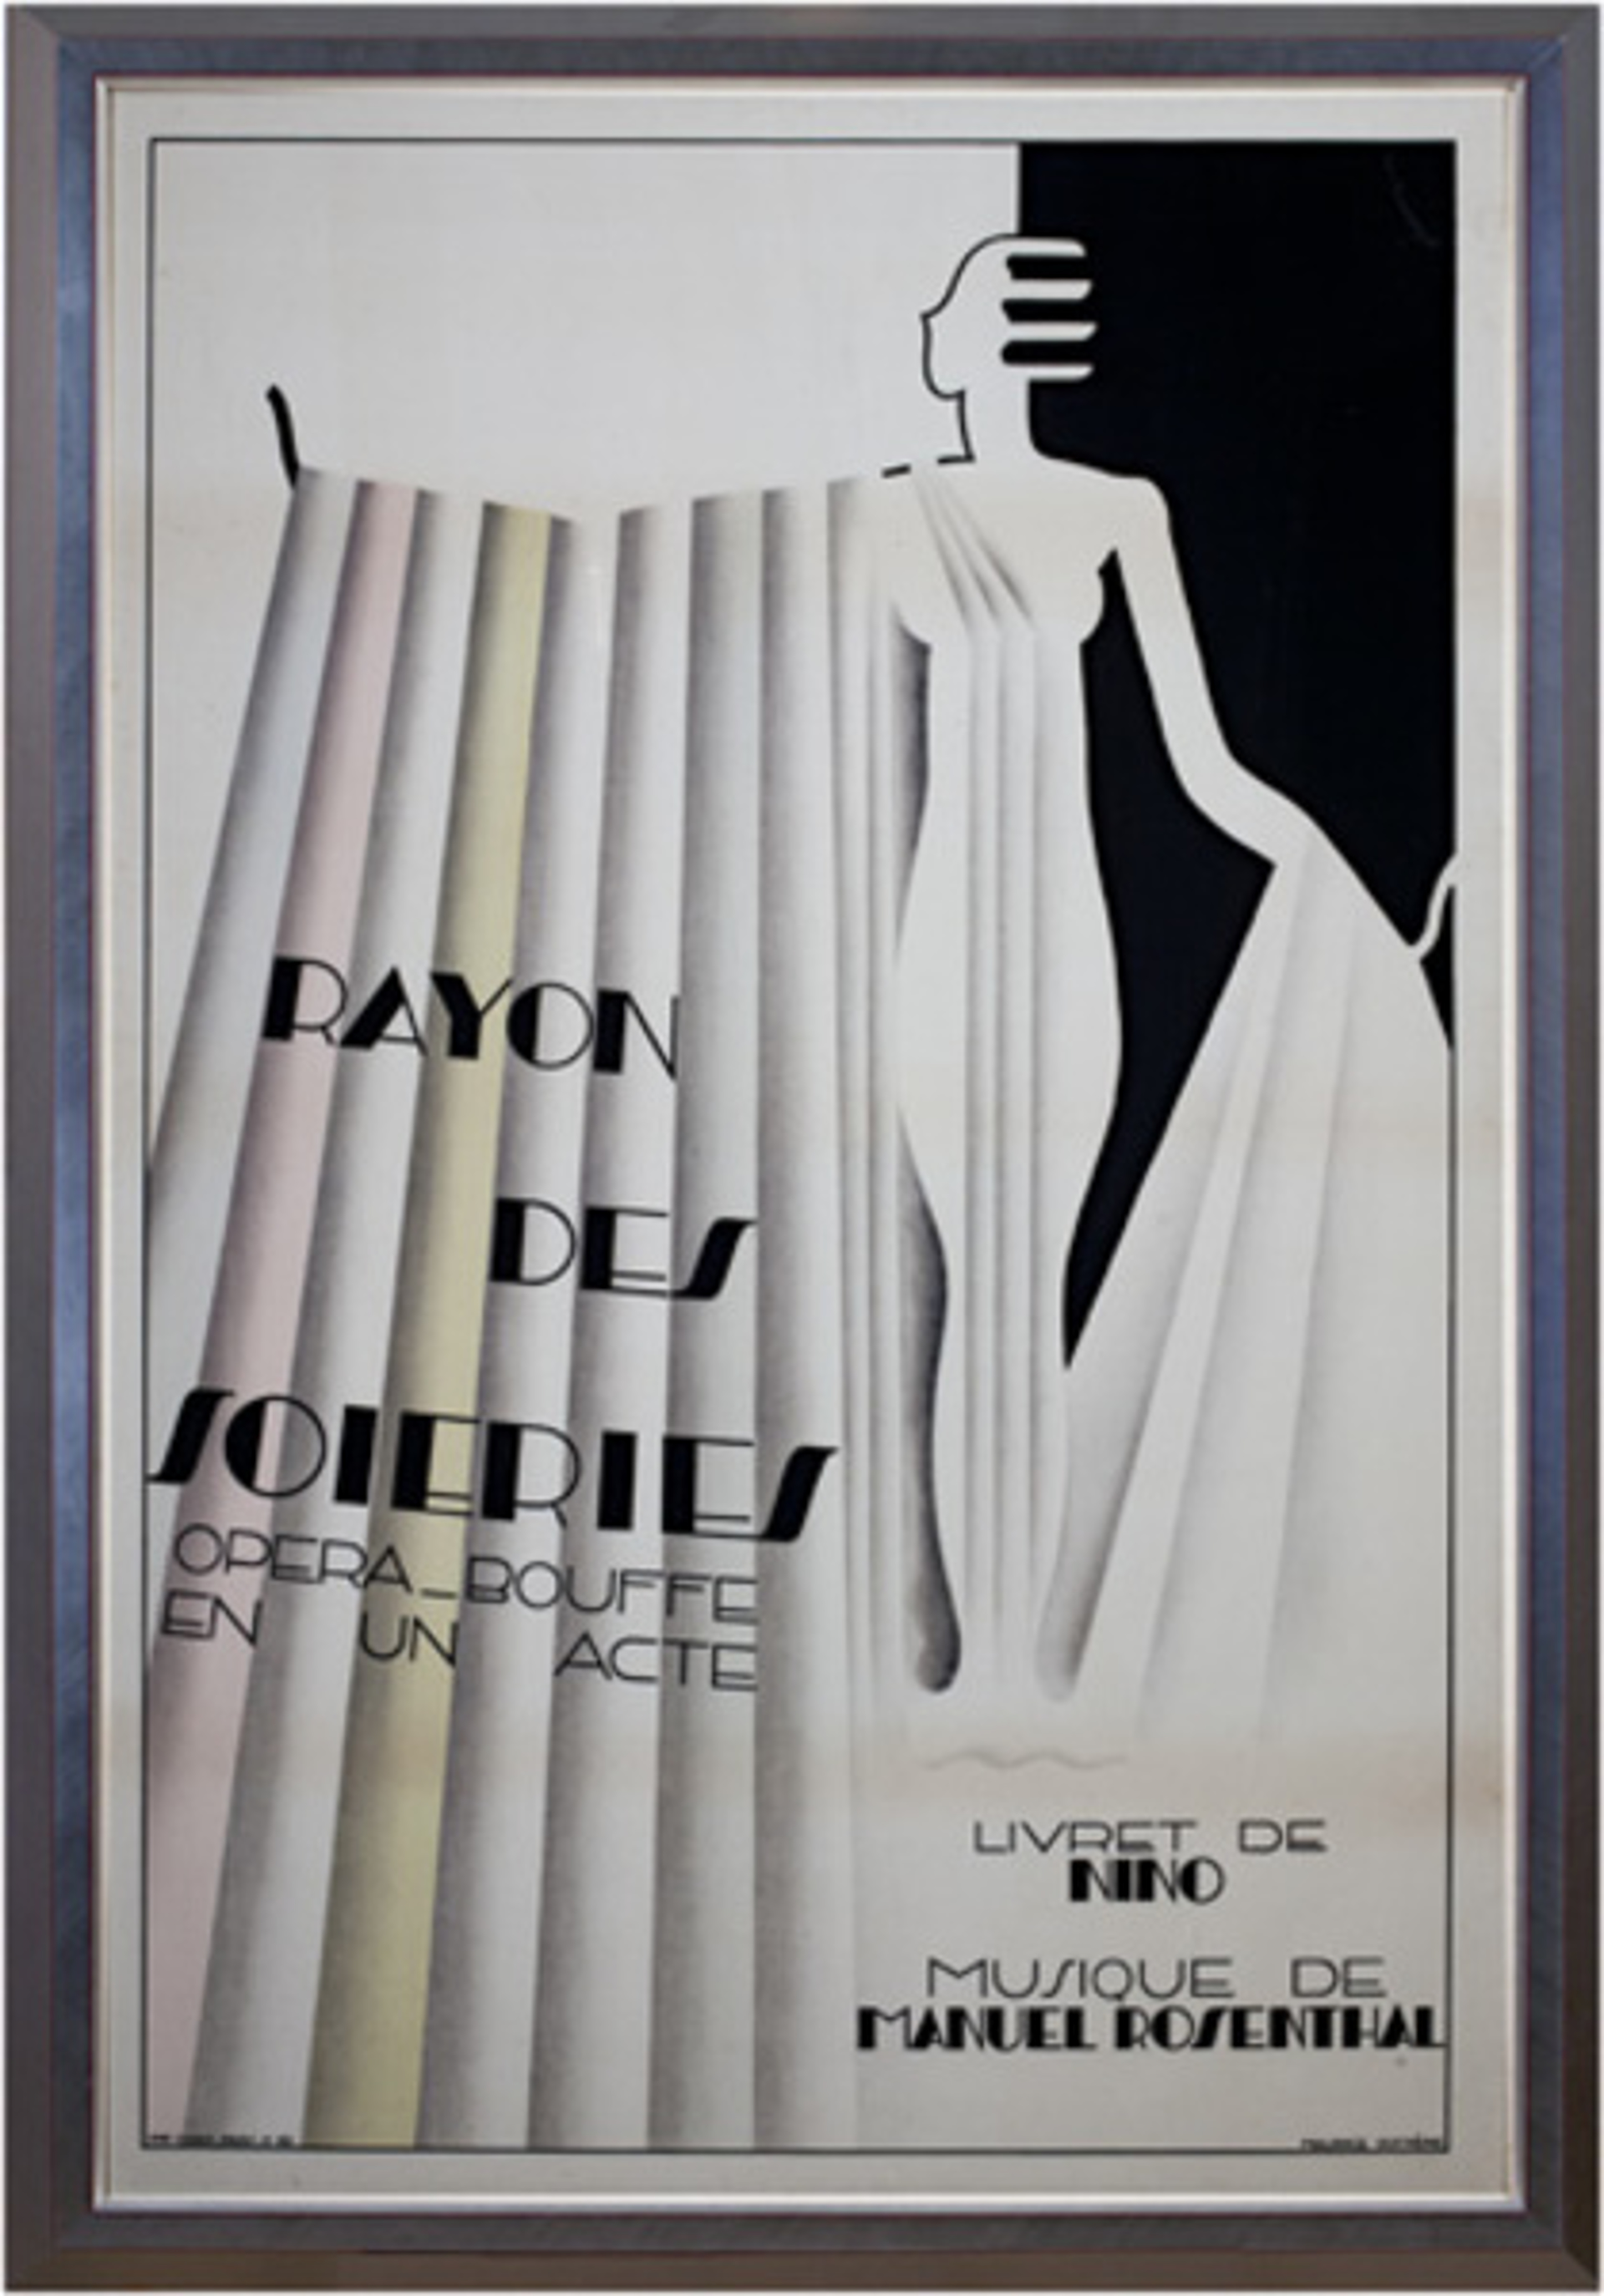 Rayon des Soieries, Opera Bouffe En Un Acte by Maurice Dufrene